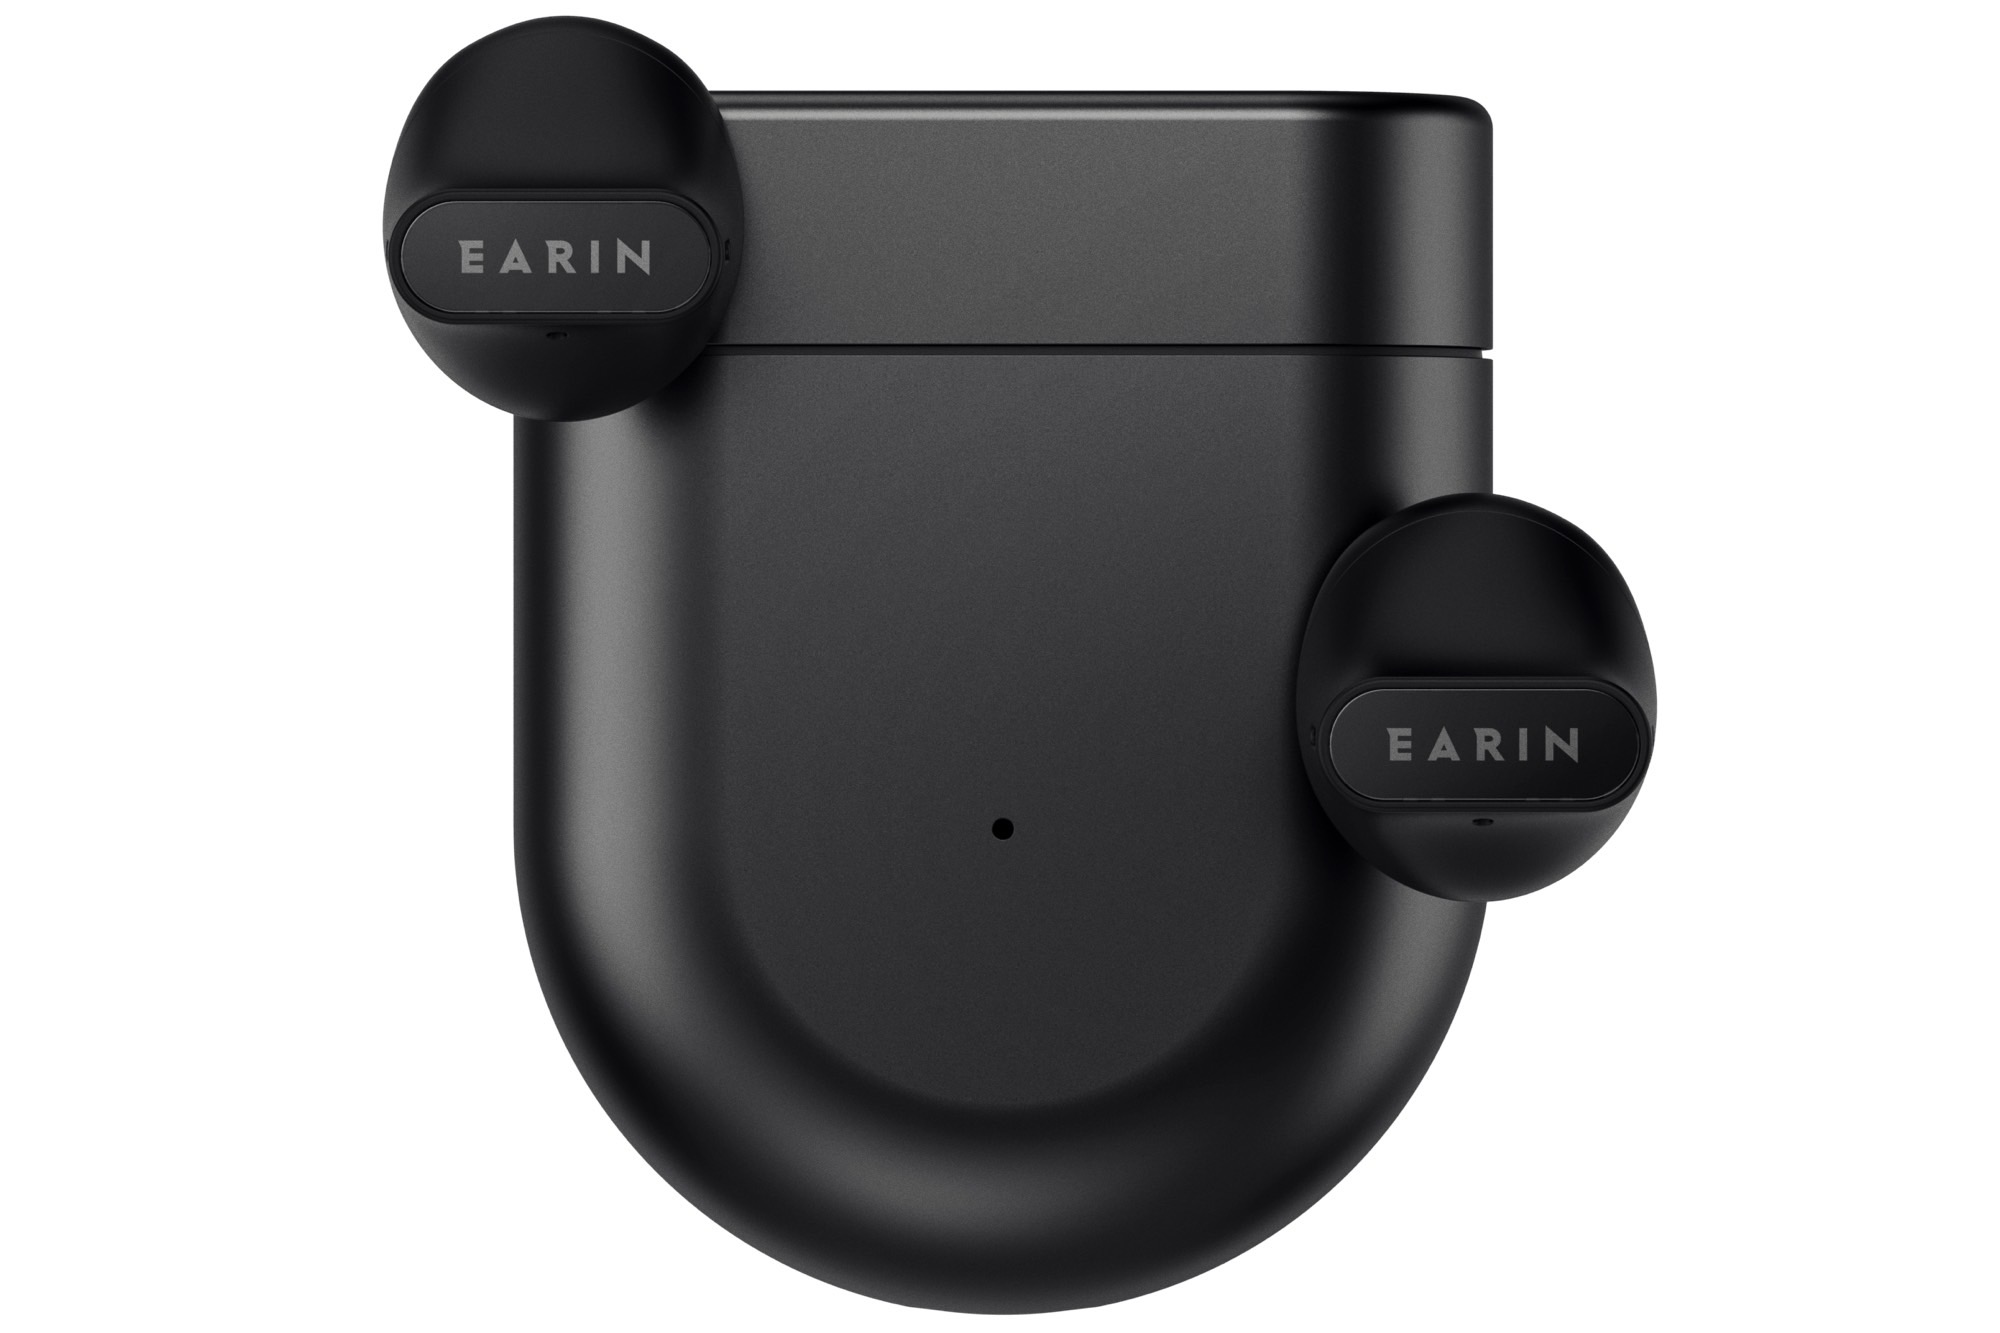 Earin A-3 true wireless earbuds